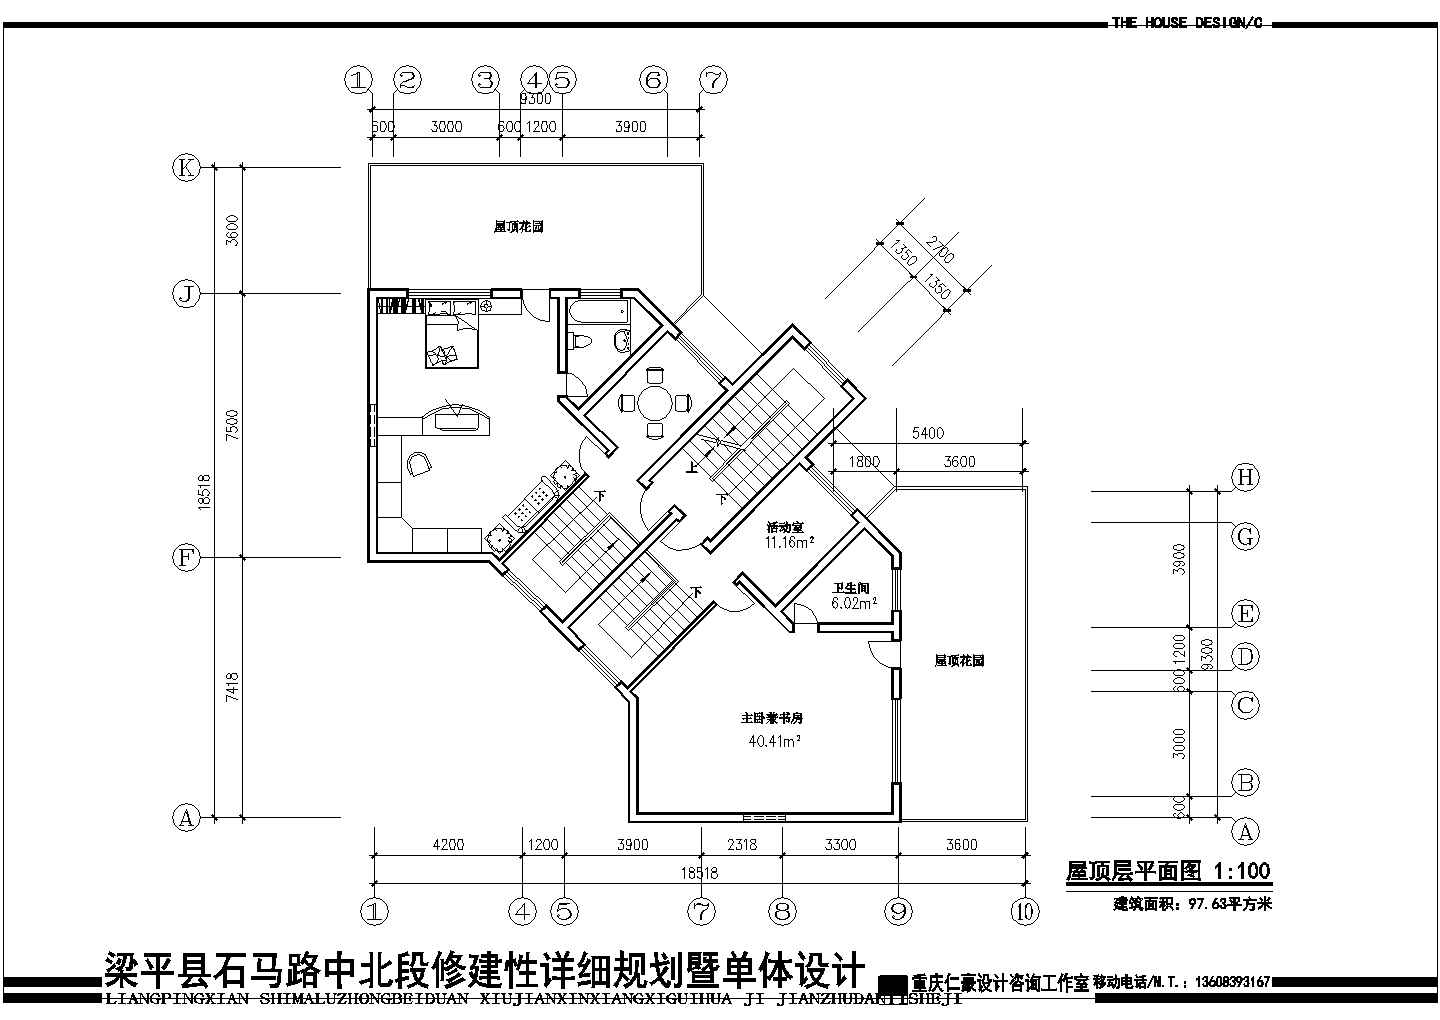 梁平县石马路中北段修建性详细规划施工图